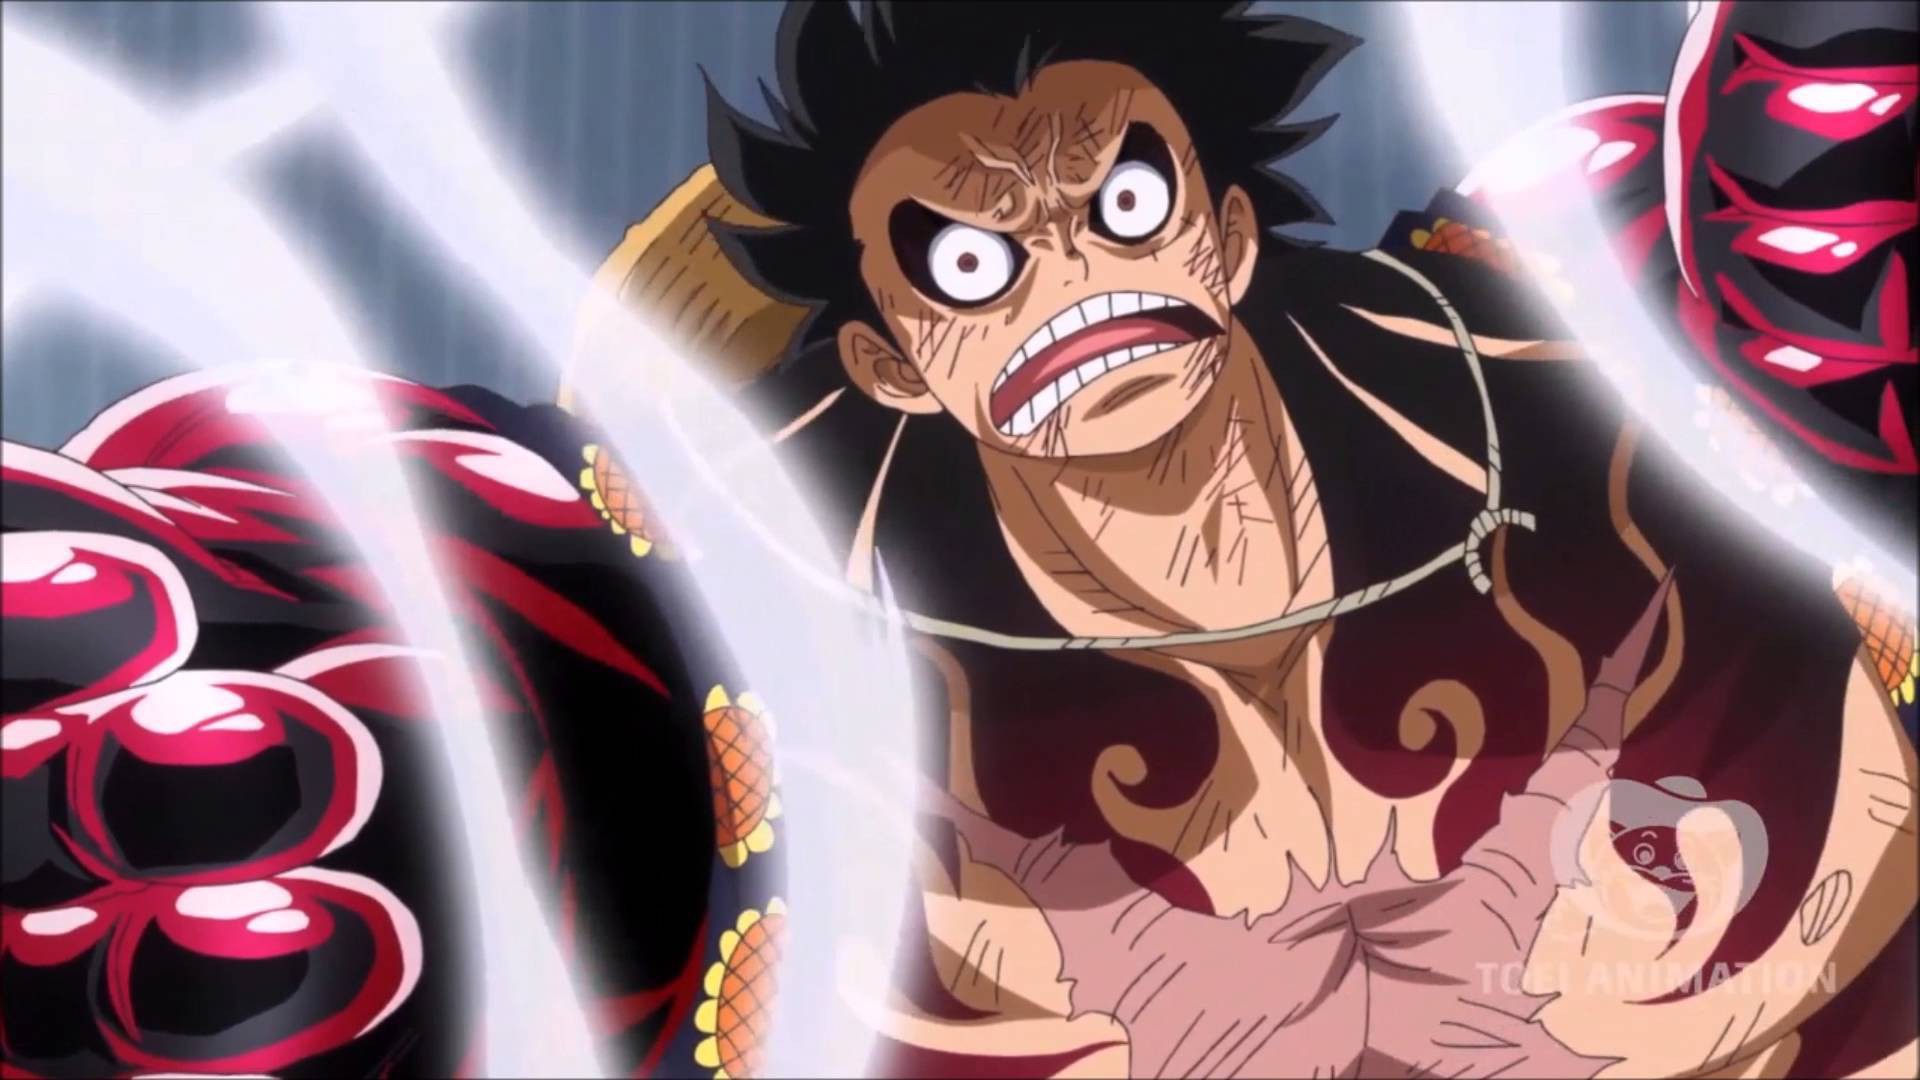 Gear 4 - Hãy xem những trận chiến đầy kịch tính và hoành tráng với Gear 4 của Luffy. Bạn sẽ không tin vào sức mạnh khủng khiếp mà Gear 4 mang lại cho nhân vật chính của chúng ta trong One Piece.